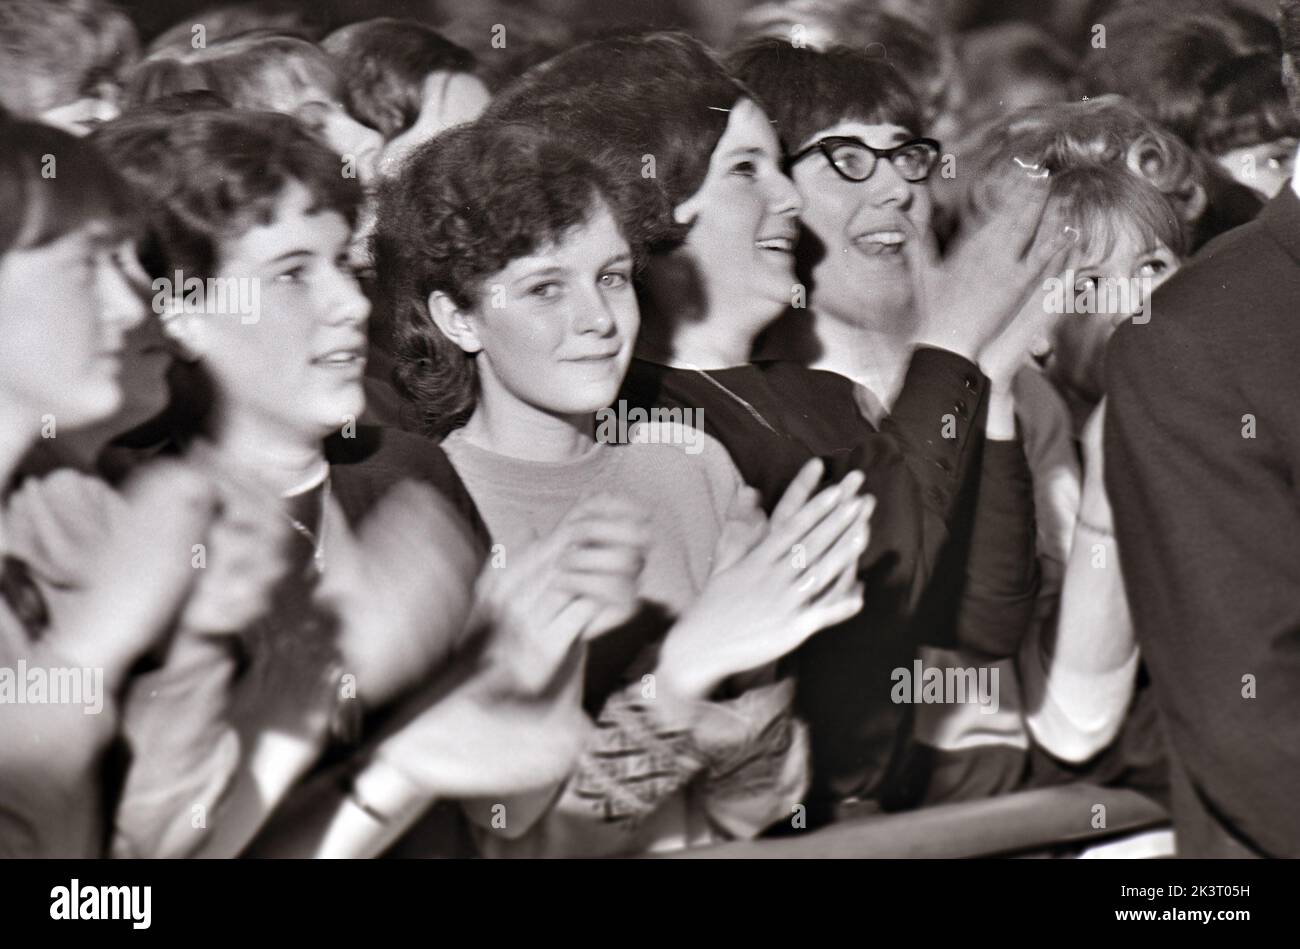 ADOLESCENTES en el Royal, Tottenham, Londres, en enero de 1964 viendo el grupo pop Dave Clark Five. Foto: Tony Gale Foto de stock